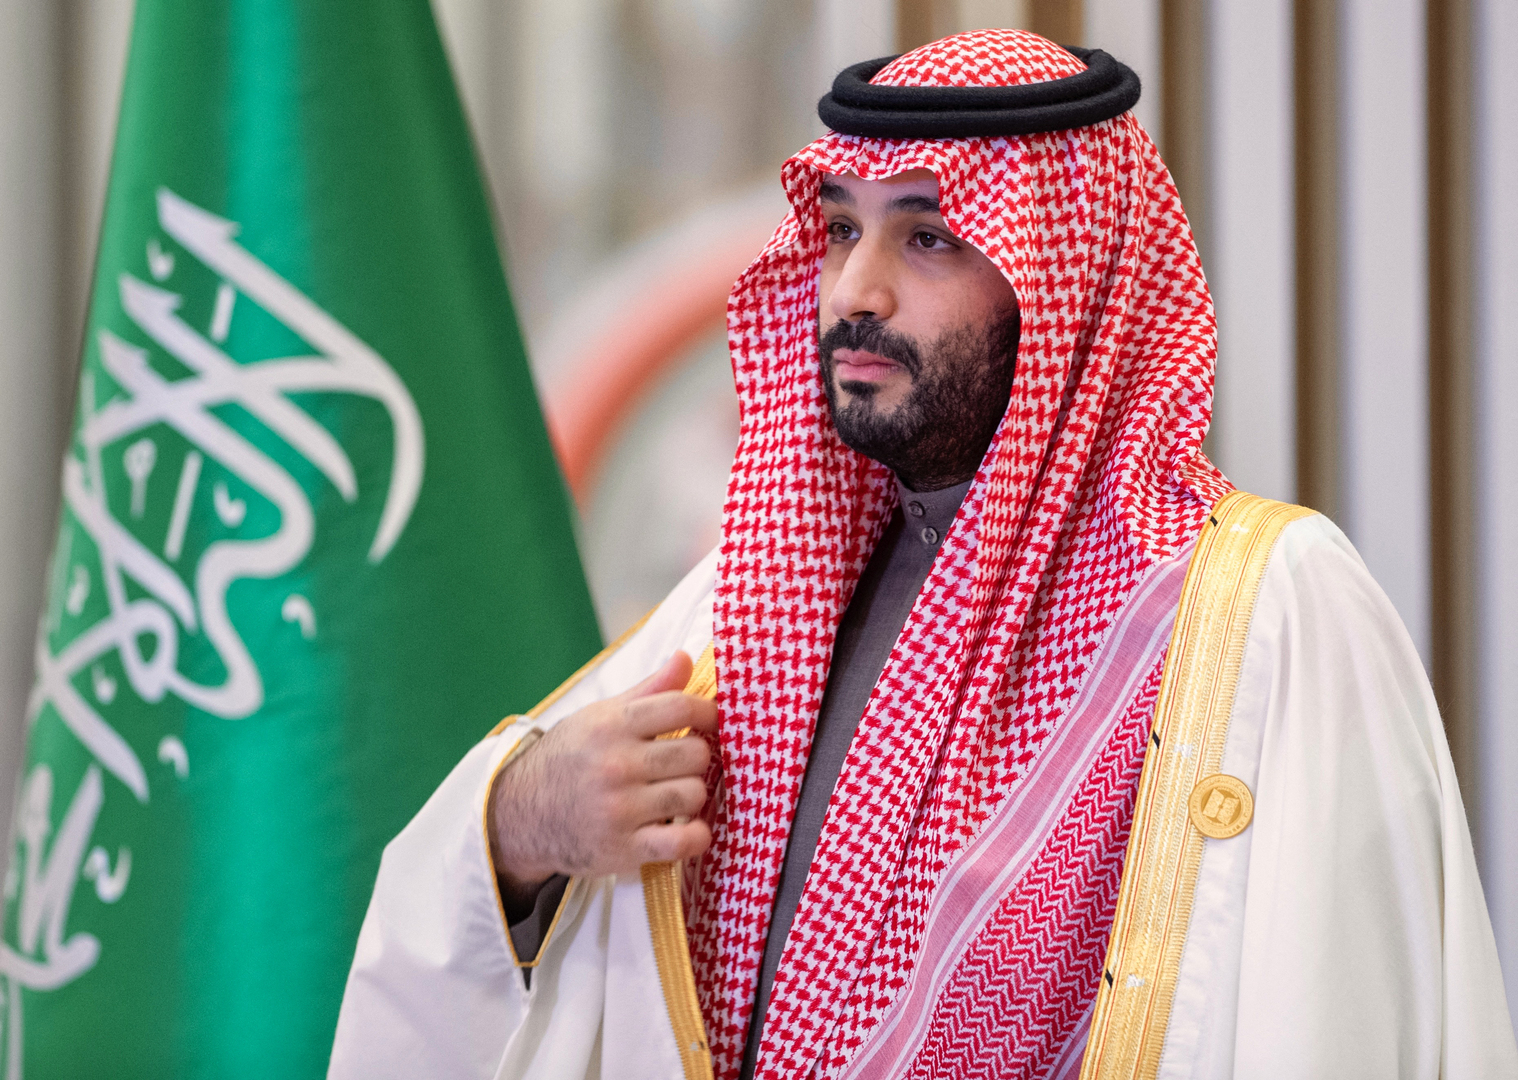 وزير الخارجية السعودي: إيران جزء من المنطقة وسنستمر في مد اليد سعيا إلى علاقة إيجابية تخدم الاستقرار